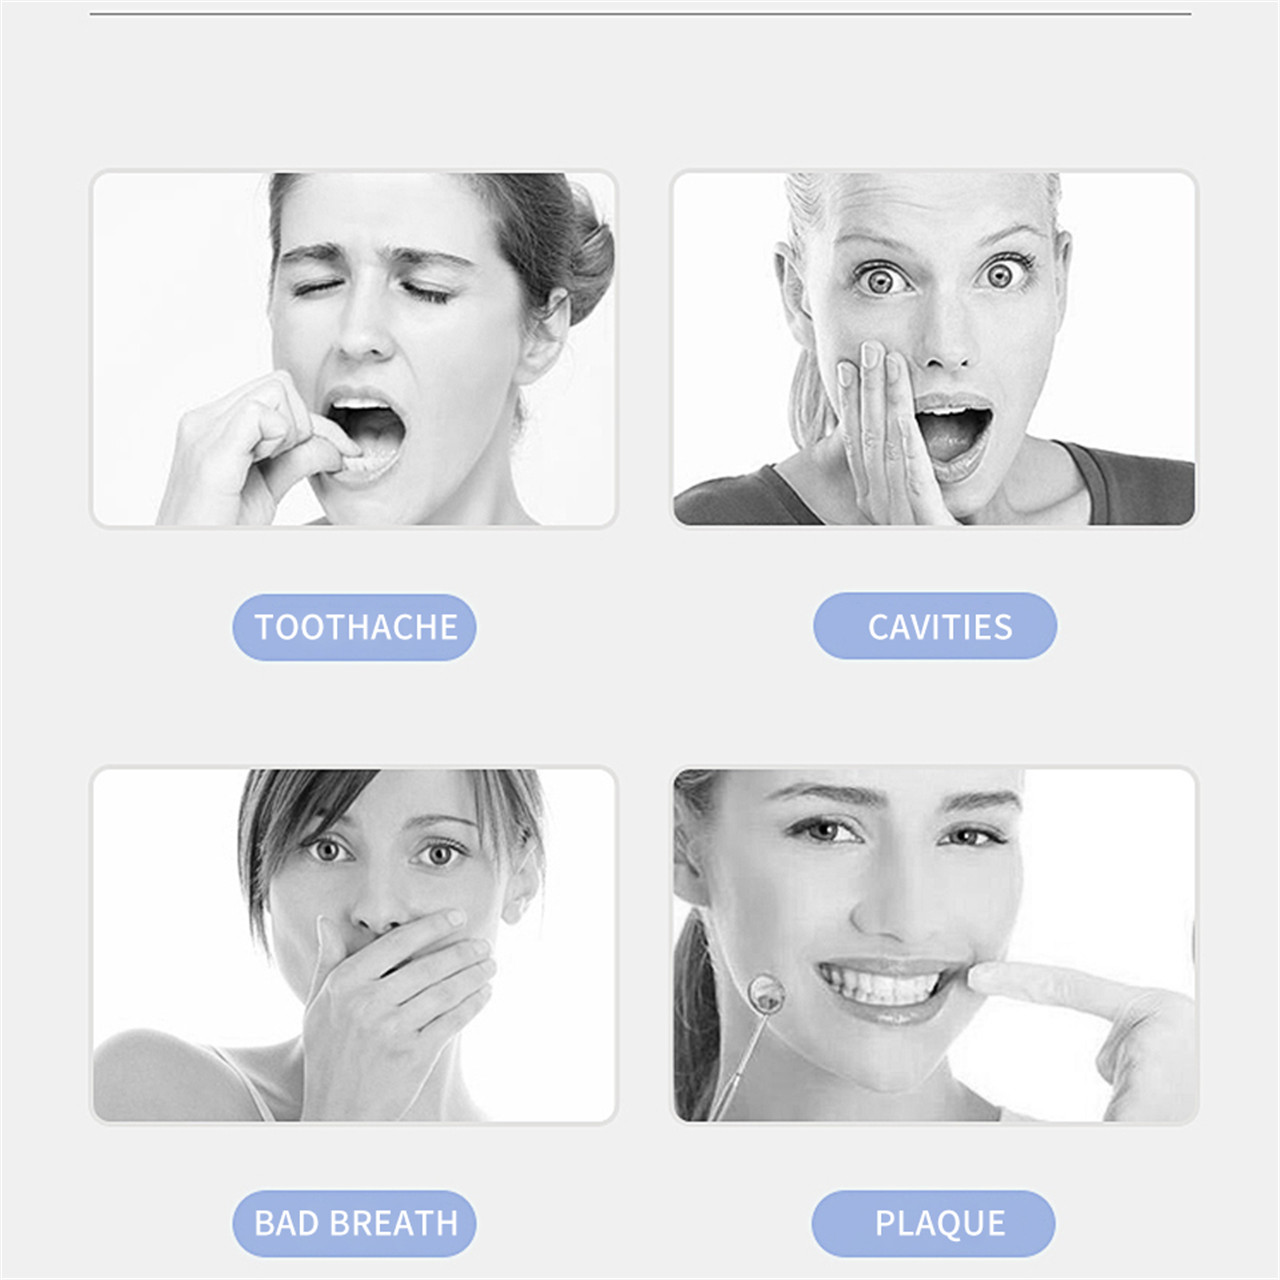 Утасгүй шүдэнд зориулсан цэнэглэдэг усан утас - Зөөврийн усан шүд цэвэрлэгч (4)